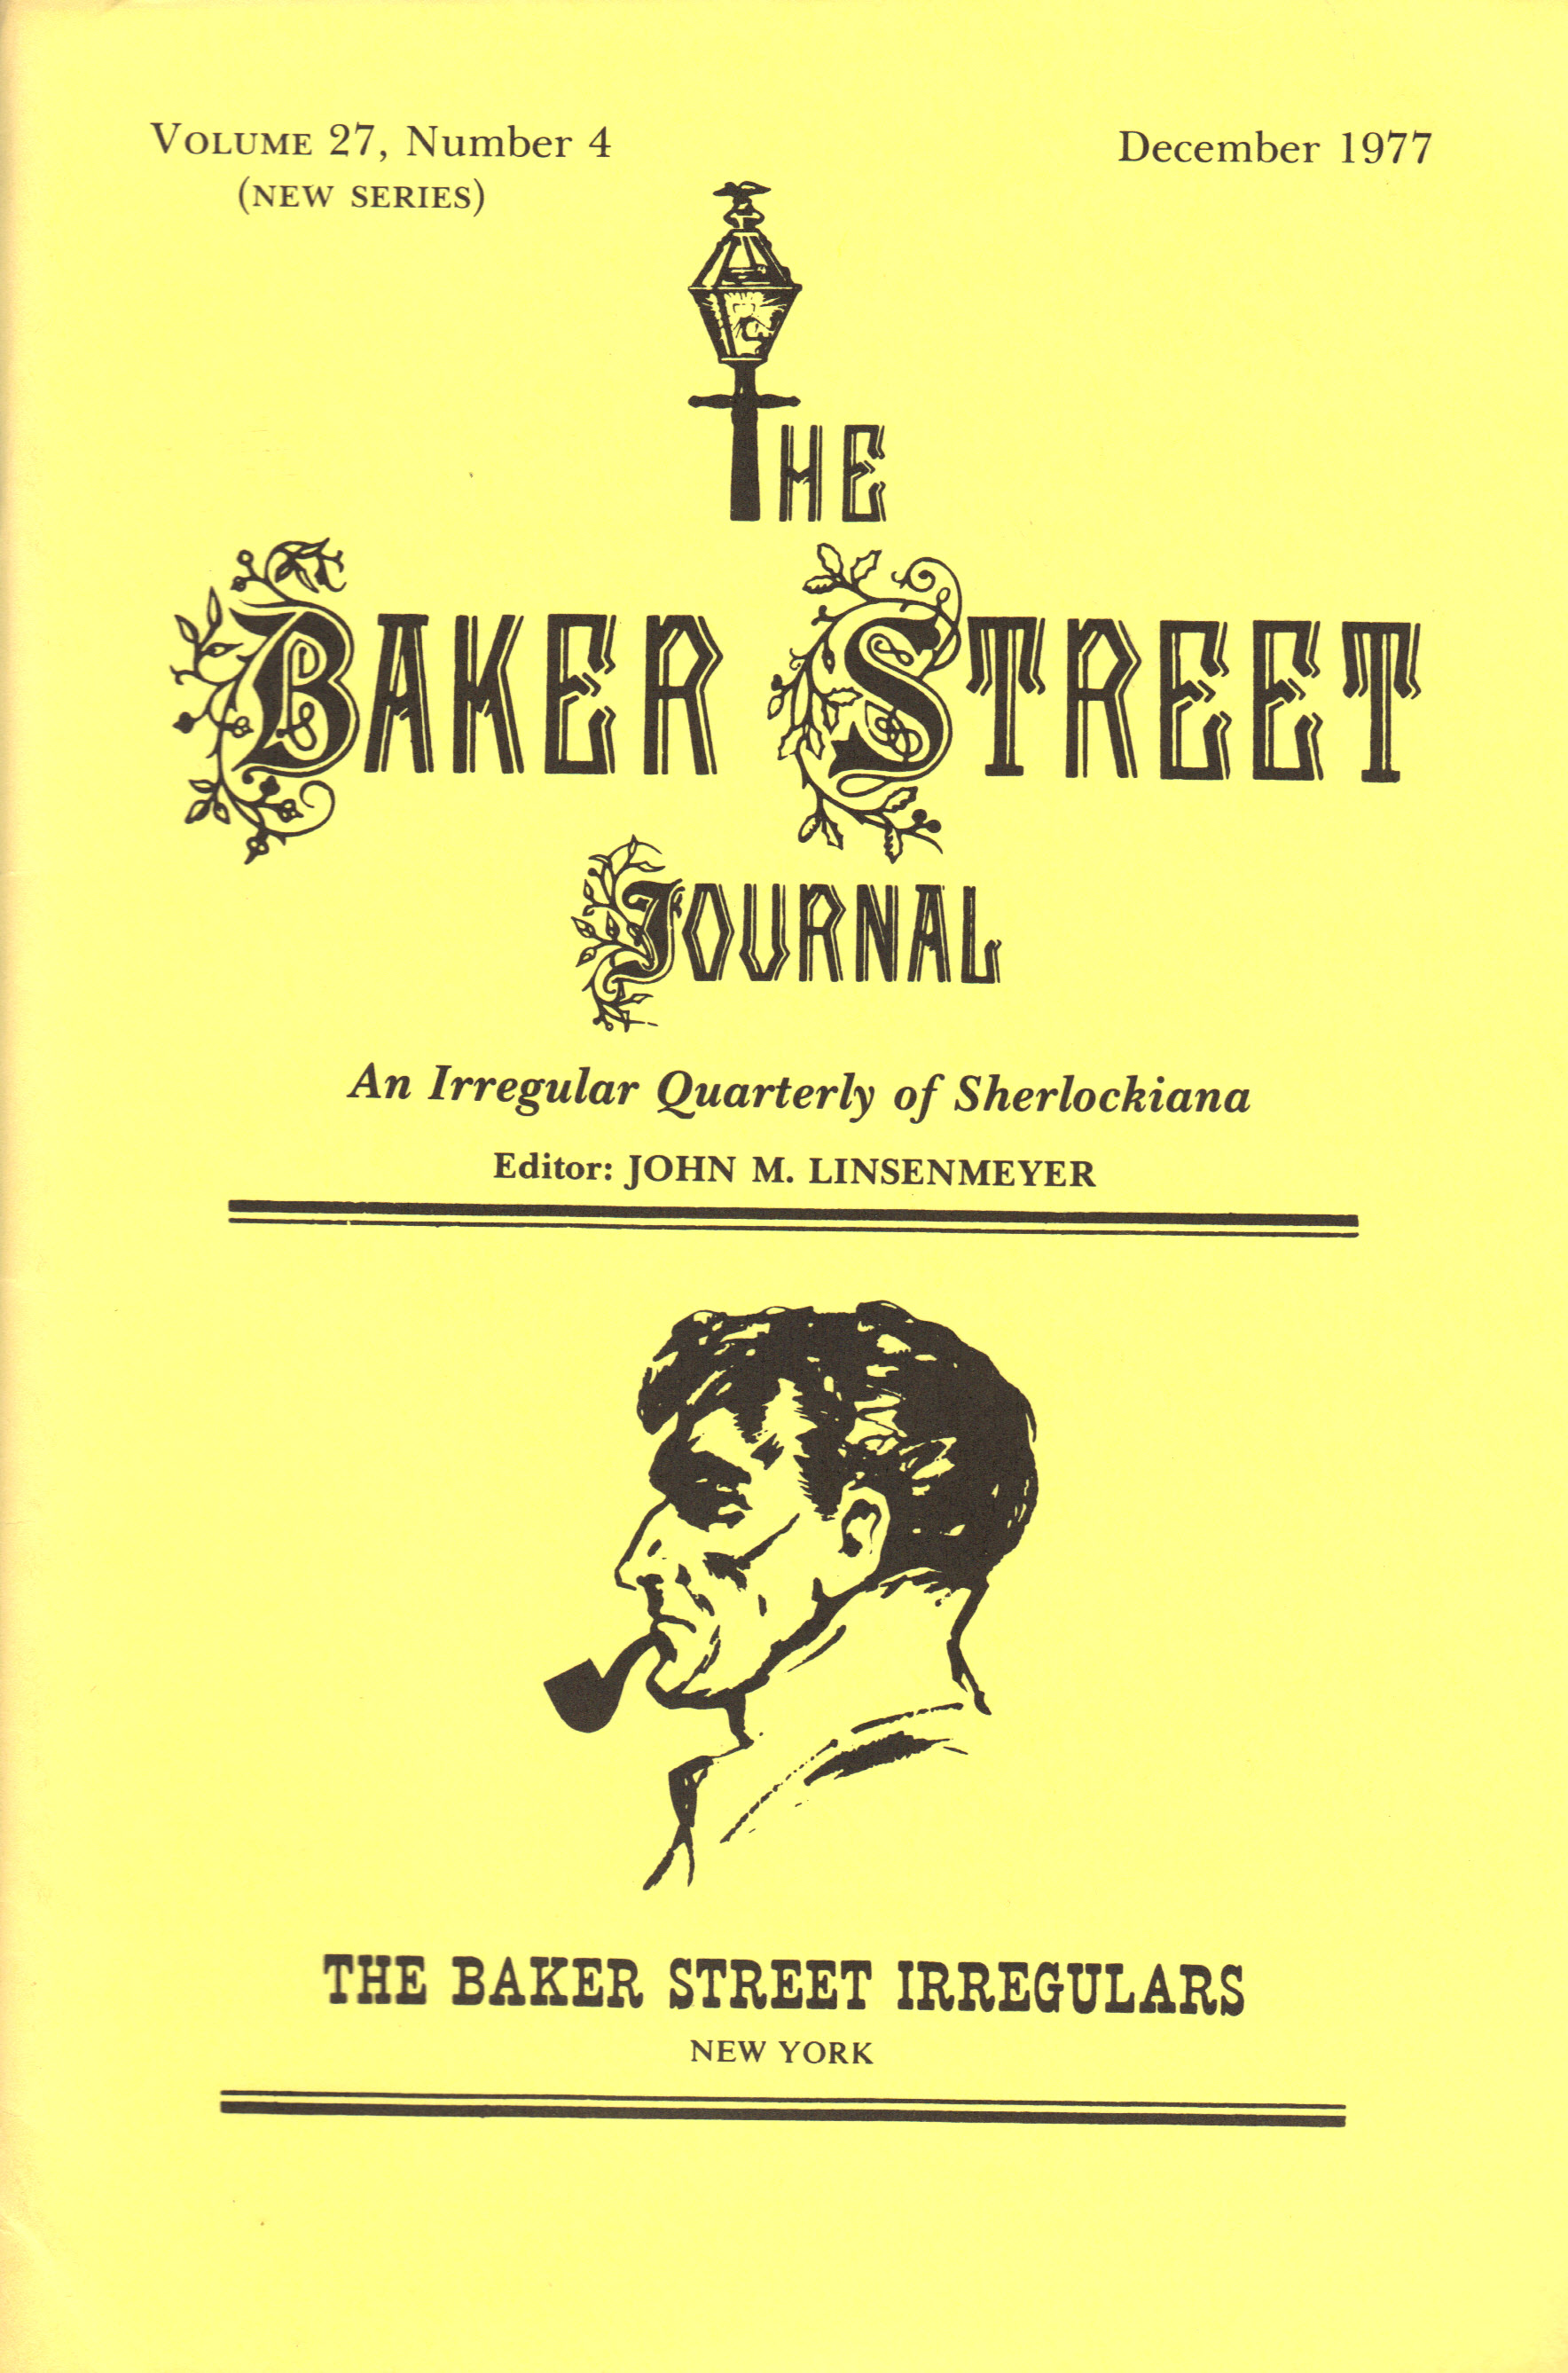 Image for THE BAKER STREET JOURNAL ~ An Irregular Quarterly of Sherlockiana ~ December 1977